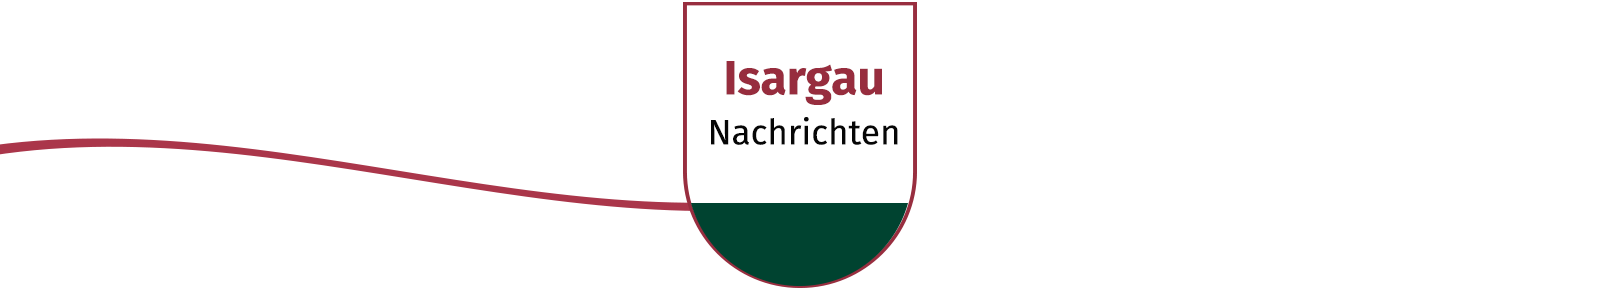 isargau-nachrichten-banner